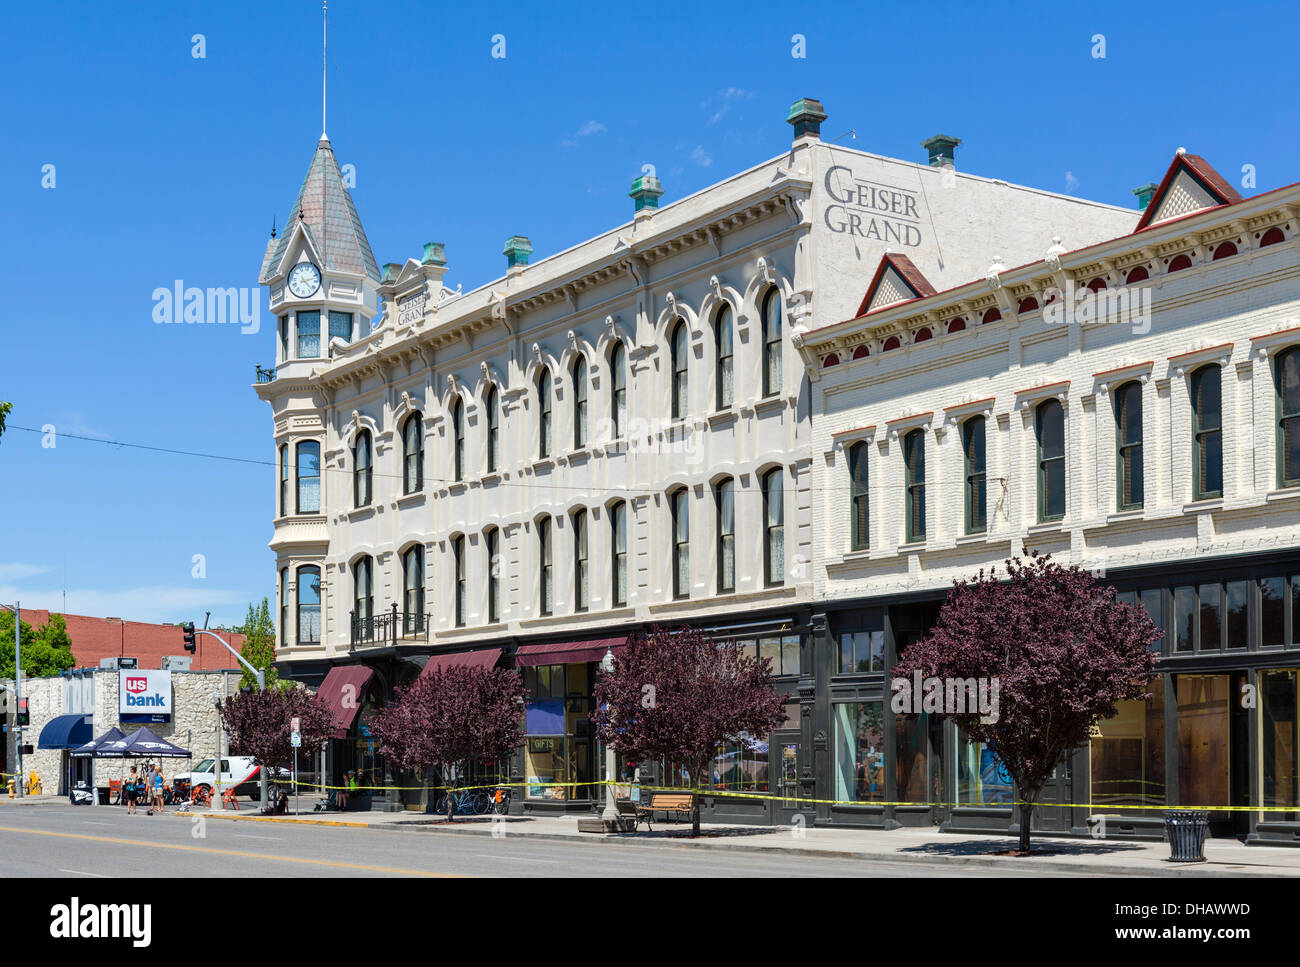 Geiser Grand Hotel historique sur la rue principale au centre-ville de Baker, Nevada, USA Banque D'Images